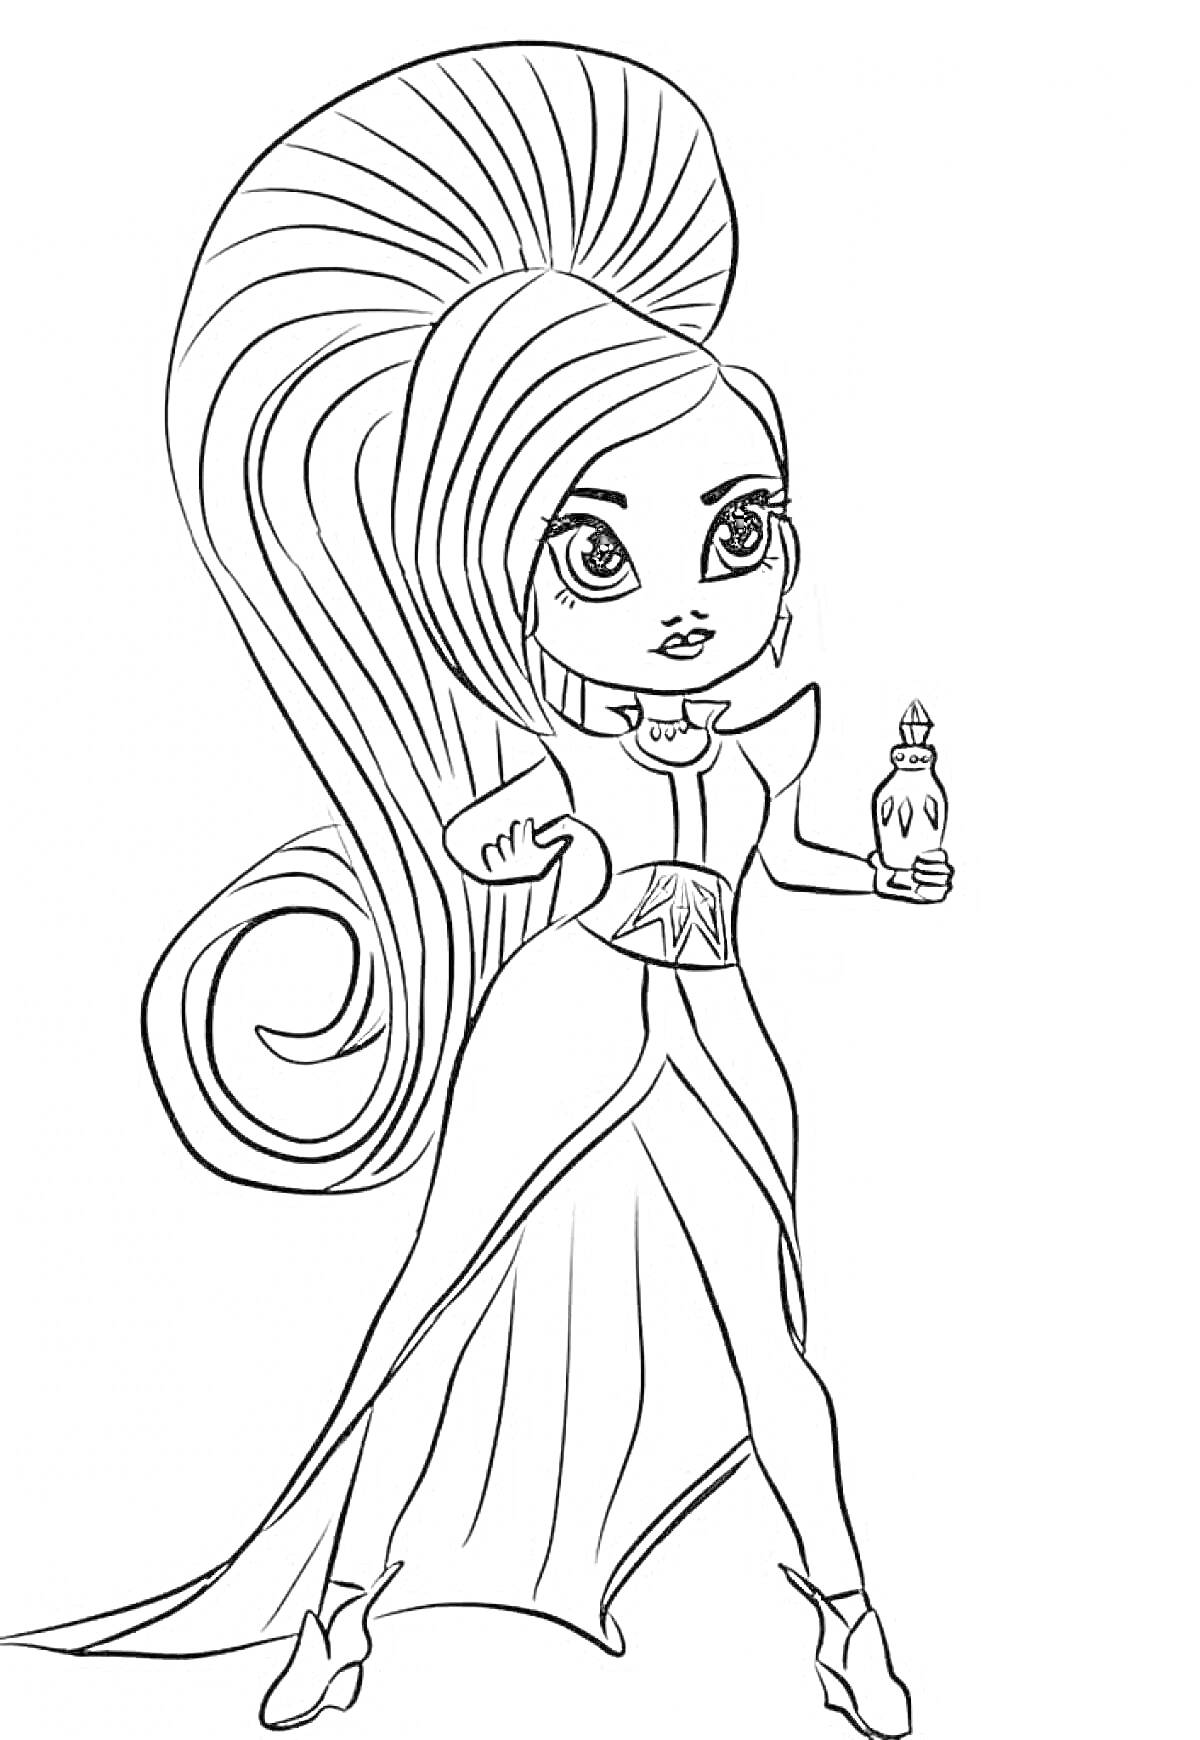 Раскраска Девочка с длинными волосами, в платье, с бутылочкой в руке.